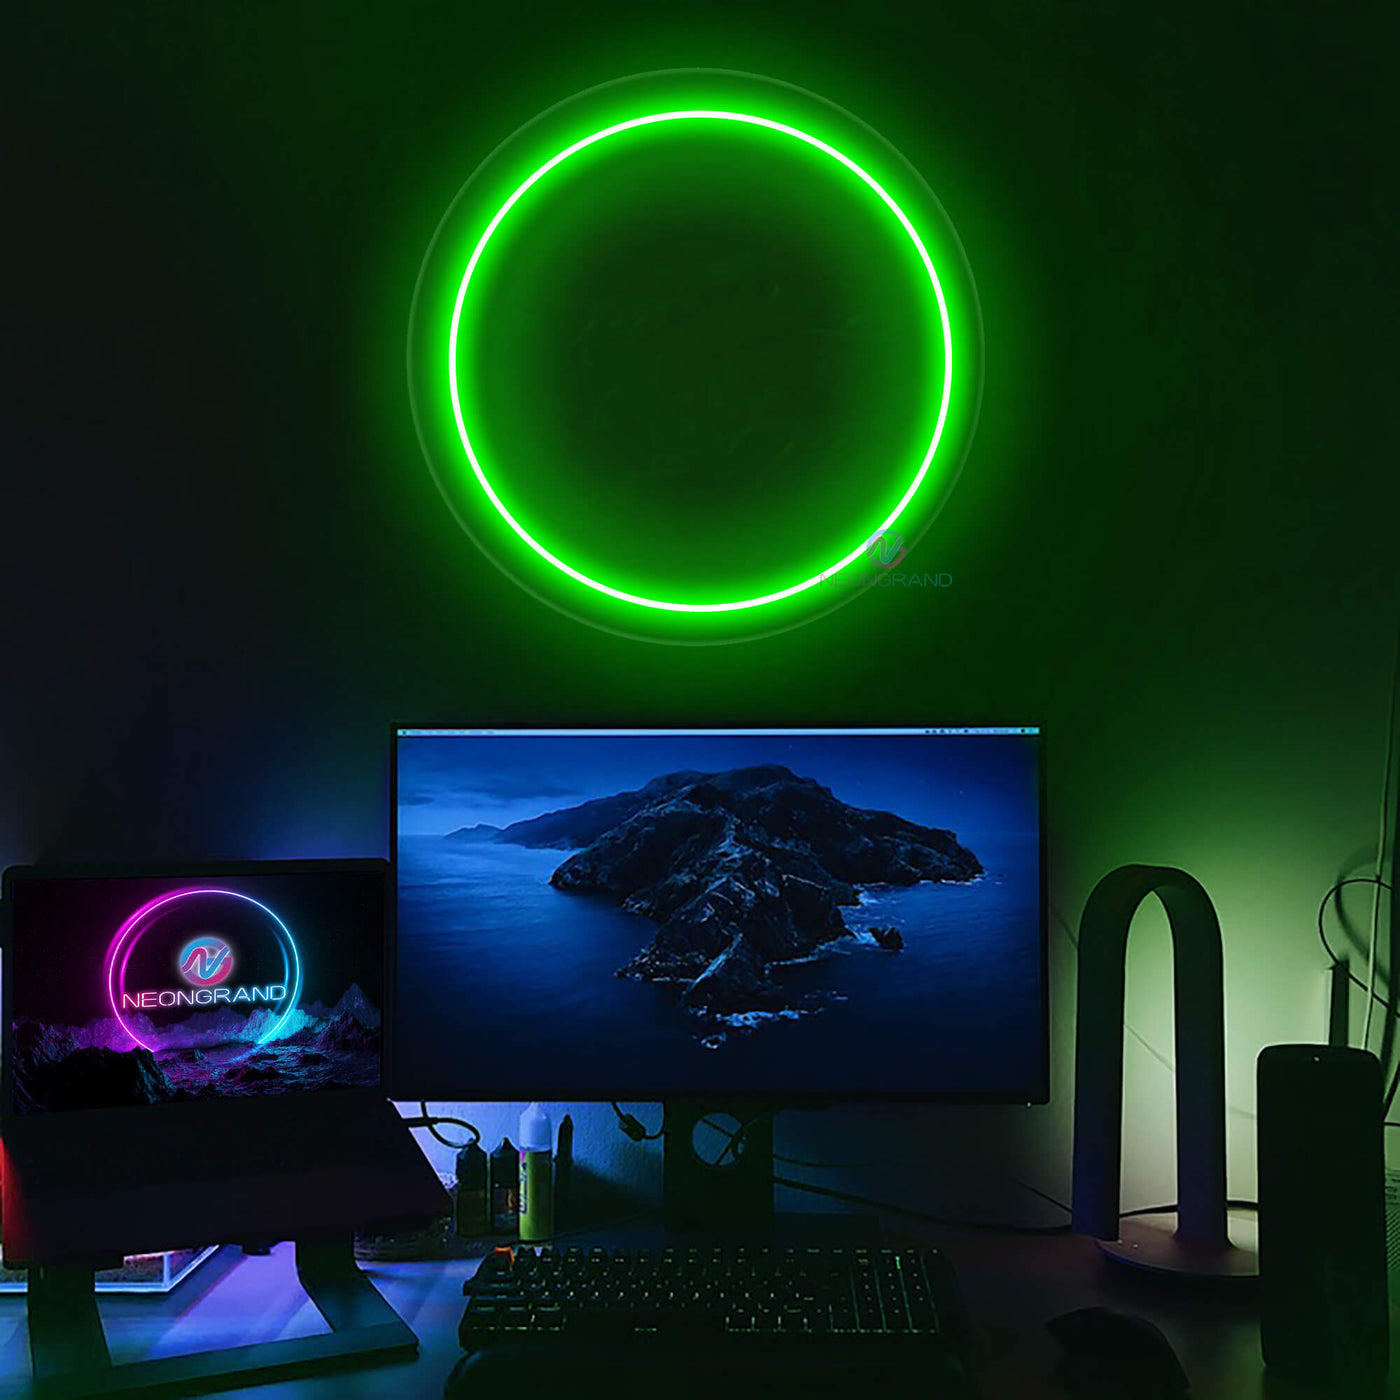 Full Moon Neon Sign Led Light green